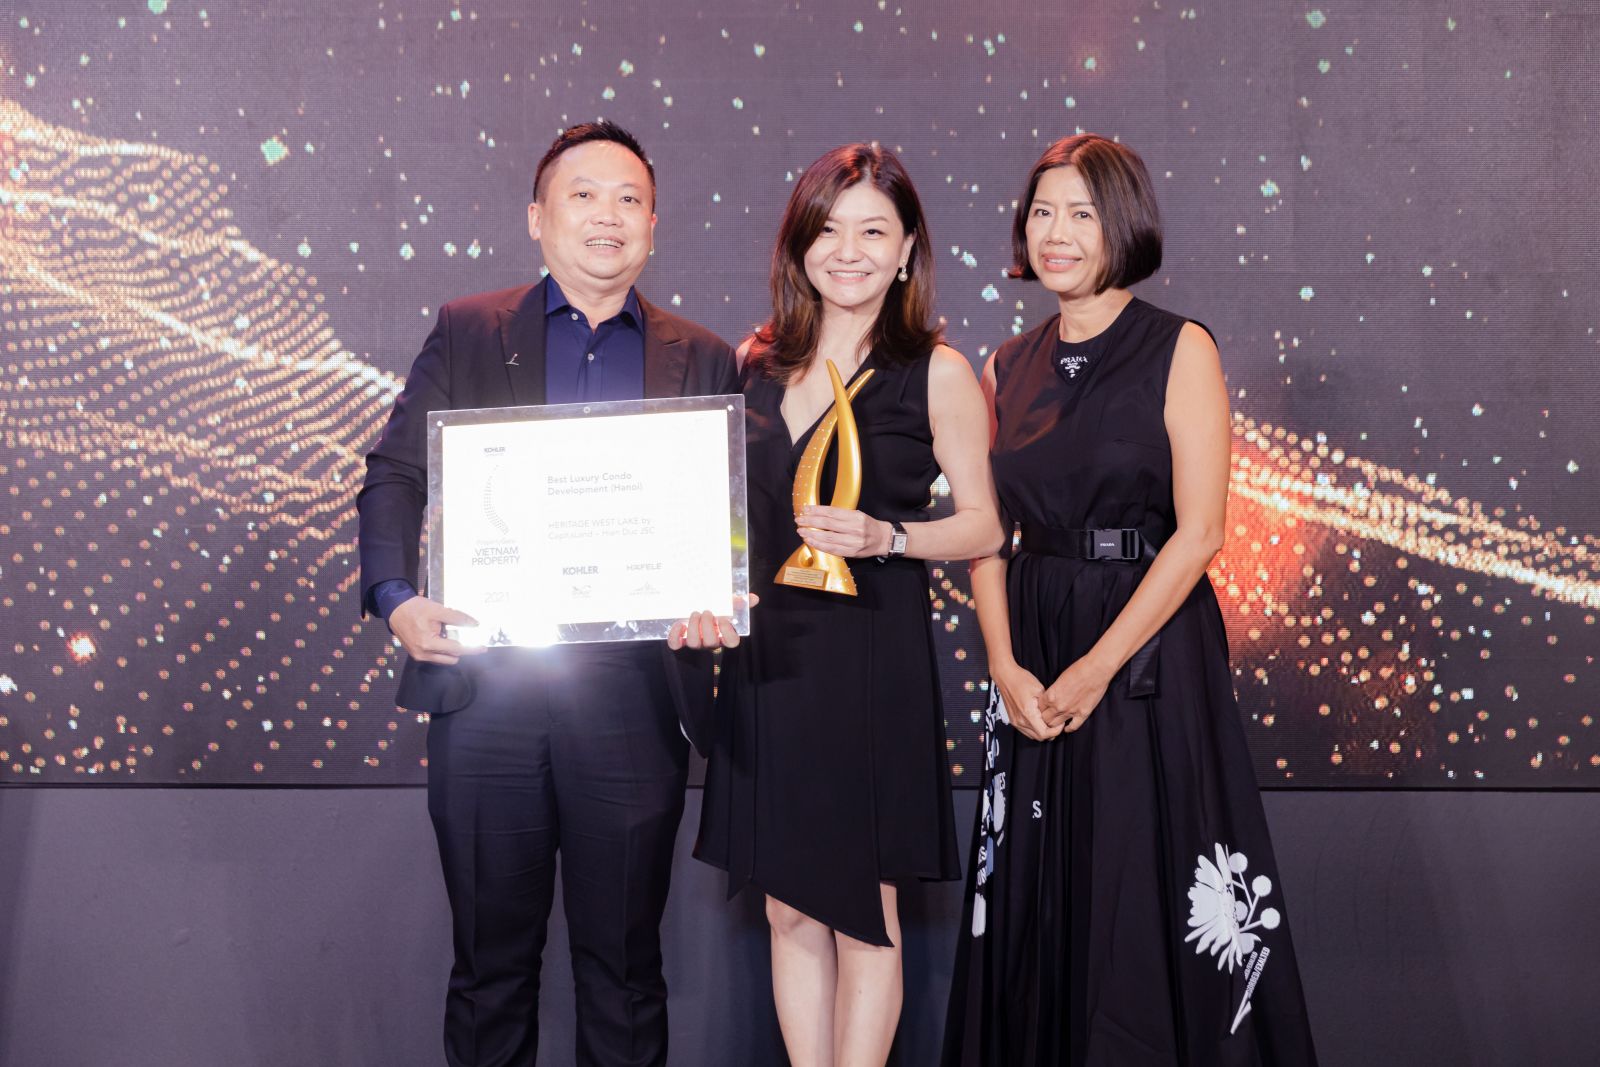 Đại diện từ CapitaLand Development nhận giải thưởng “Dự án căn hộ hạng sang xuất sắc” tại Hà Nội cho dự án Heritage West Lake